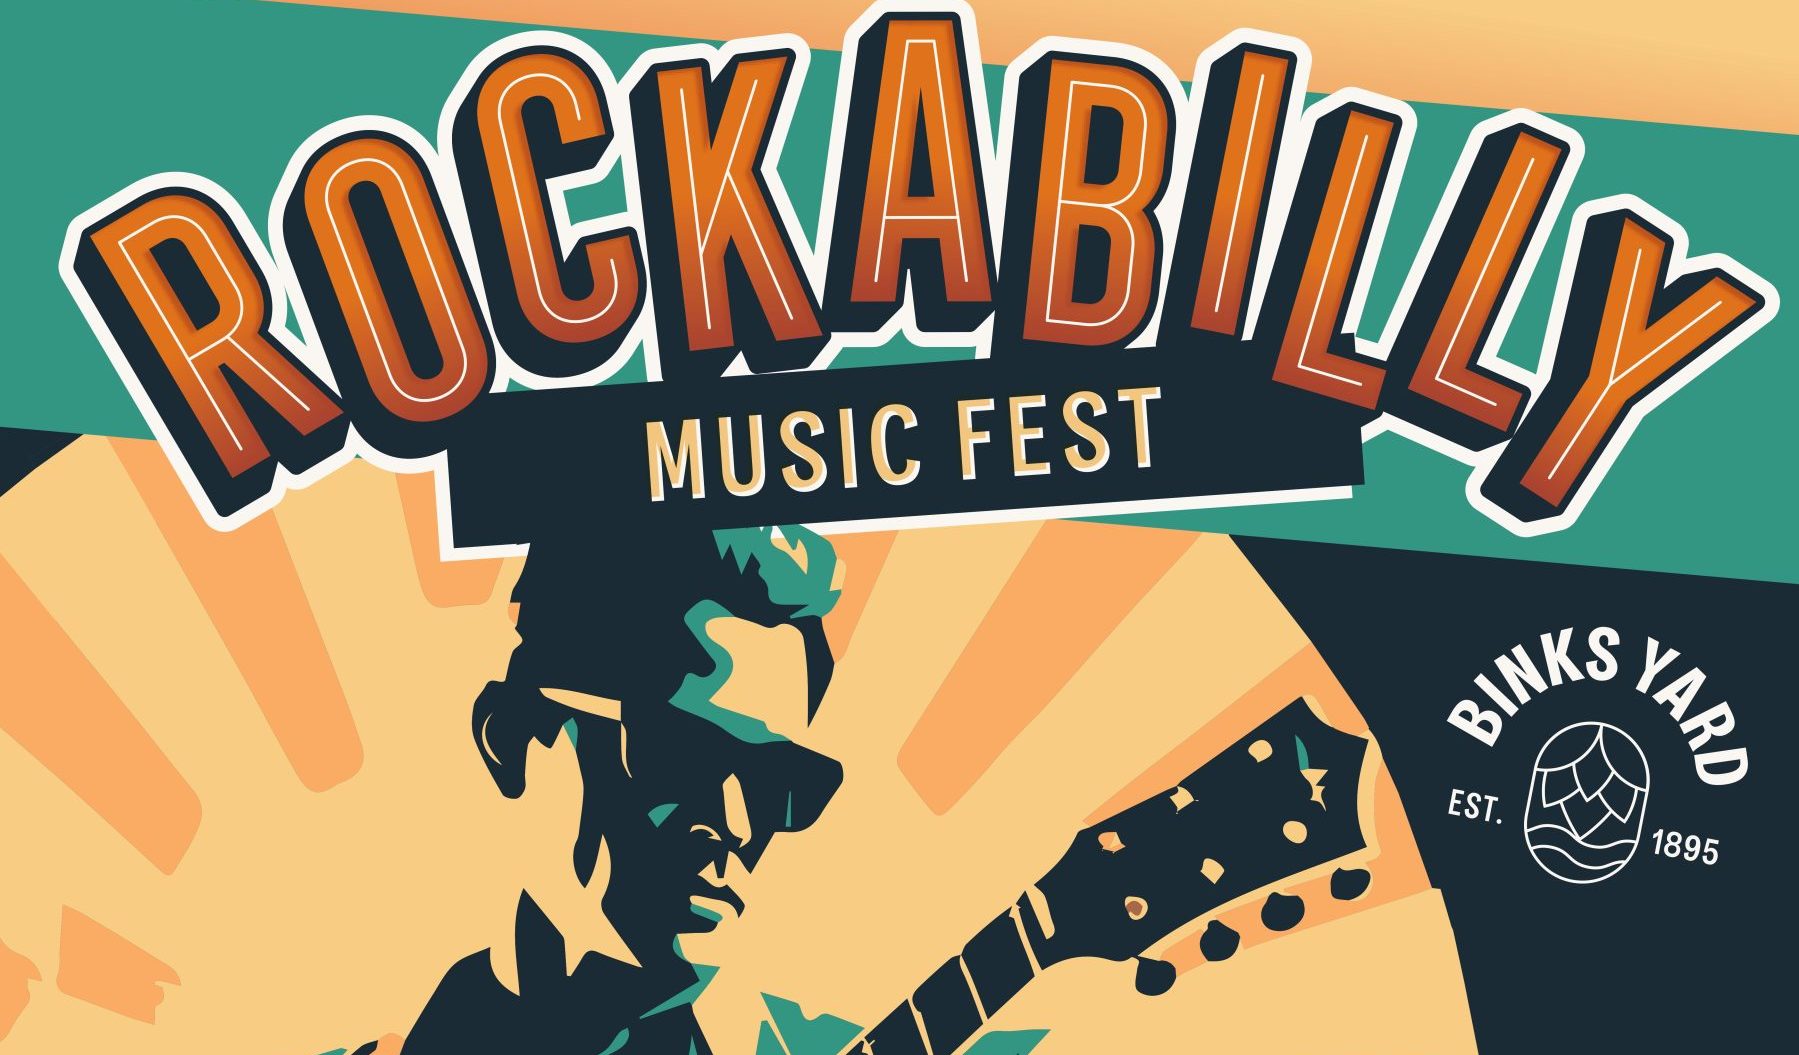 Rockabilly Music Festival - Yard